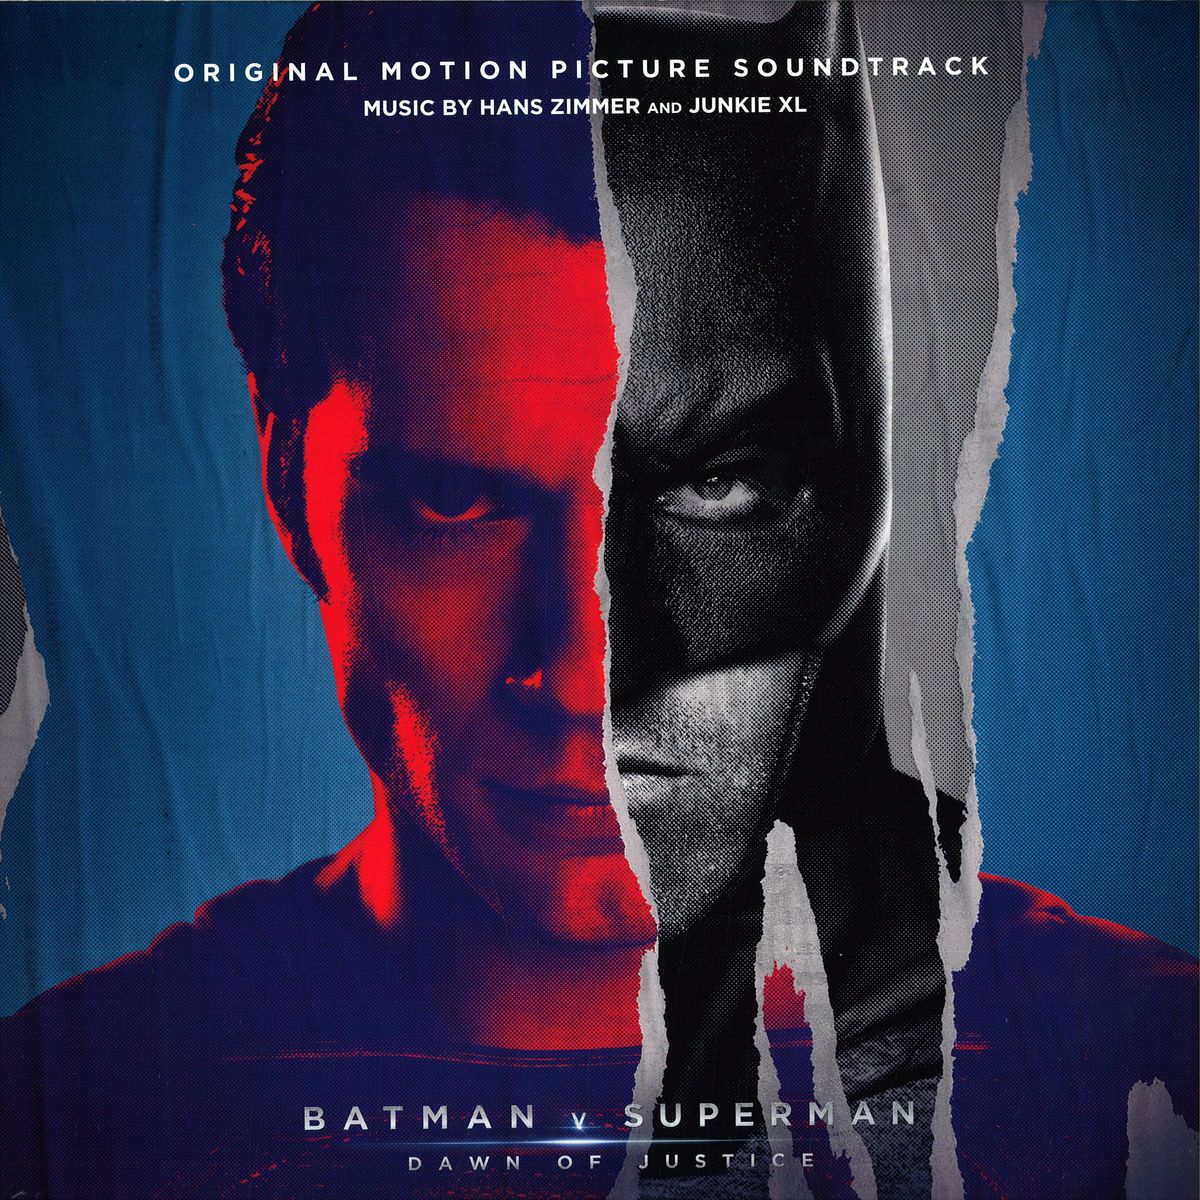 Hans Zimmer Junkie Xl Batman Vs Superman Dawn Of Justice Music On Vinyl Movatm088 Vinyl